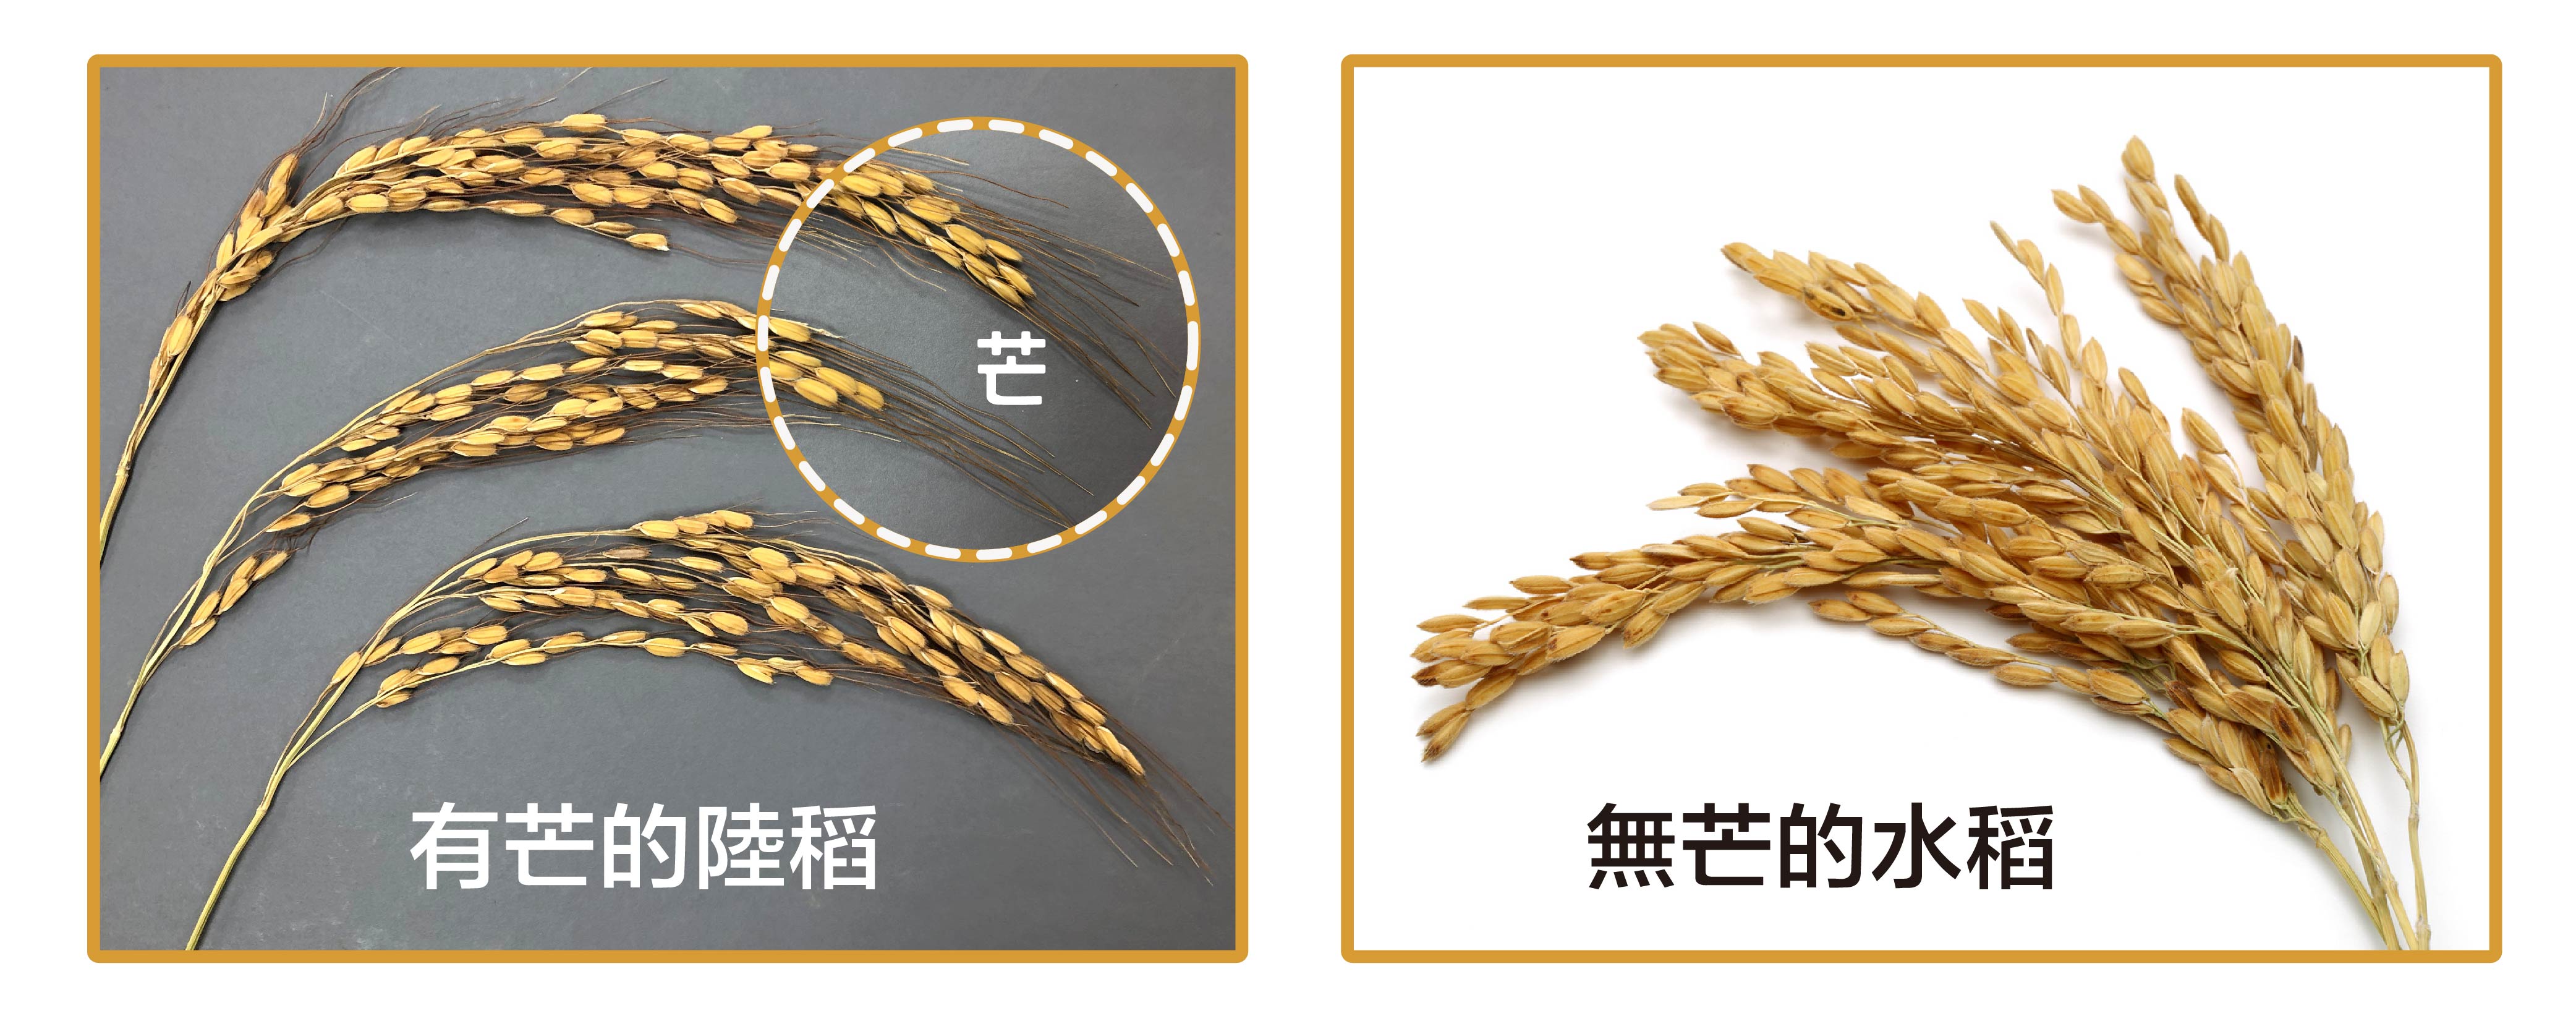 有芒的陸稻 (左圖) 與無芒的水稻 (右圖)。什麼是馴化？人類以稻米為糧食，會選擇顆粒大的、產量多的、方便採收的稻子，久而久之，稻子的性狀就會被馴化–趨向於人類所喜好的特性，像是米粒變得大而飽滿、穀粒不具有芒、不容易落粒、植株直立而不倒伏等等。野生陸稻多有稻芒，主要的功用是防止鳥兒啄食稻穀，還可幫助穀粒落地或附著在動物身上，以便傳播。不過，有芒的稻子收割和儲藏就不方便了。我們現在栽種的水稻，經過長期的馴化，穀粒上都沒有「芒」了。左圖│研之有物、右圖│iStock